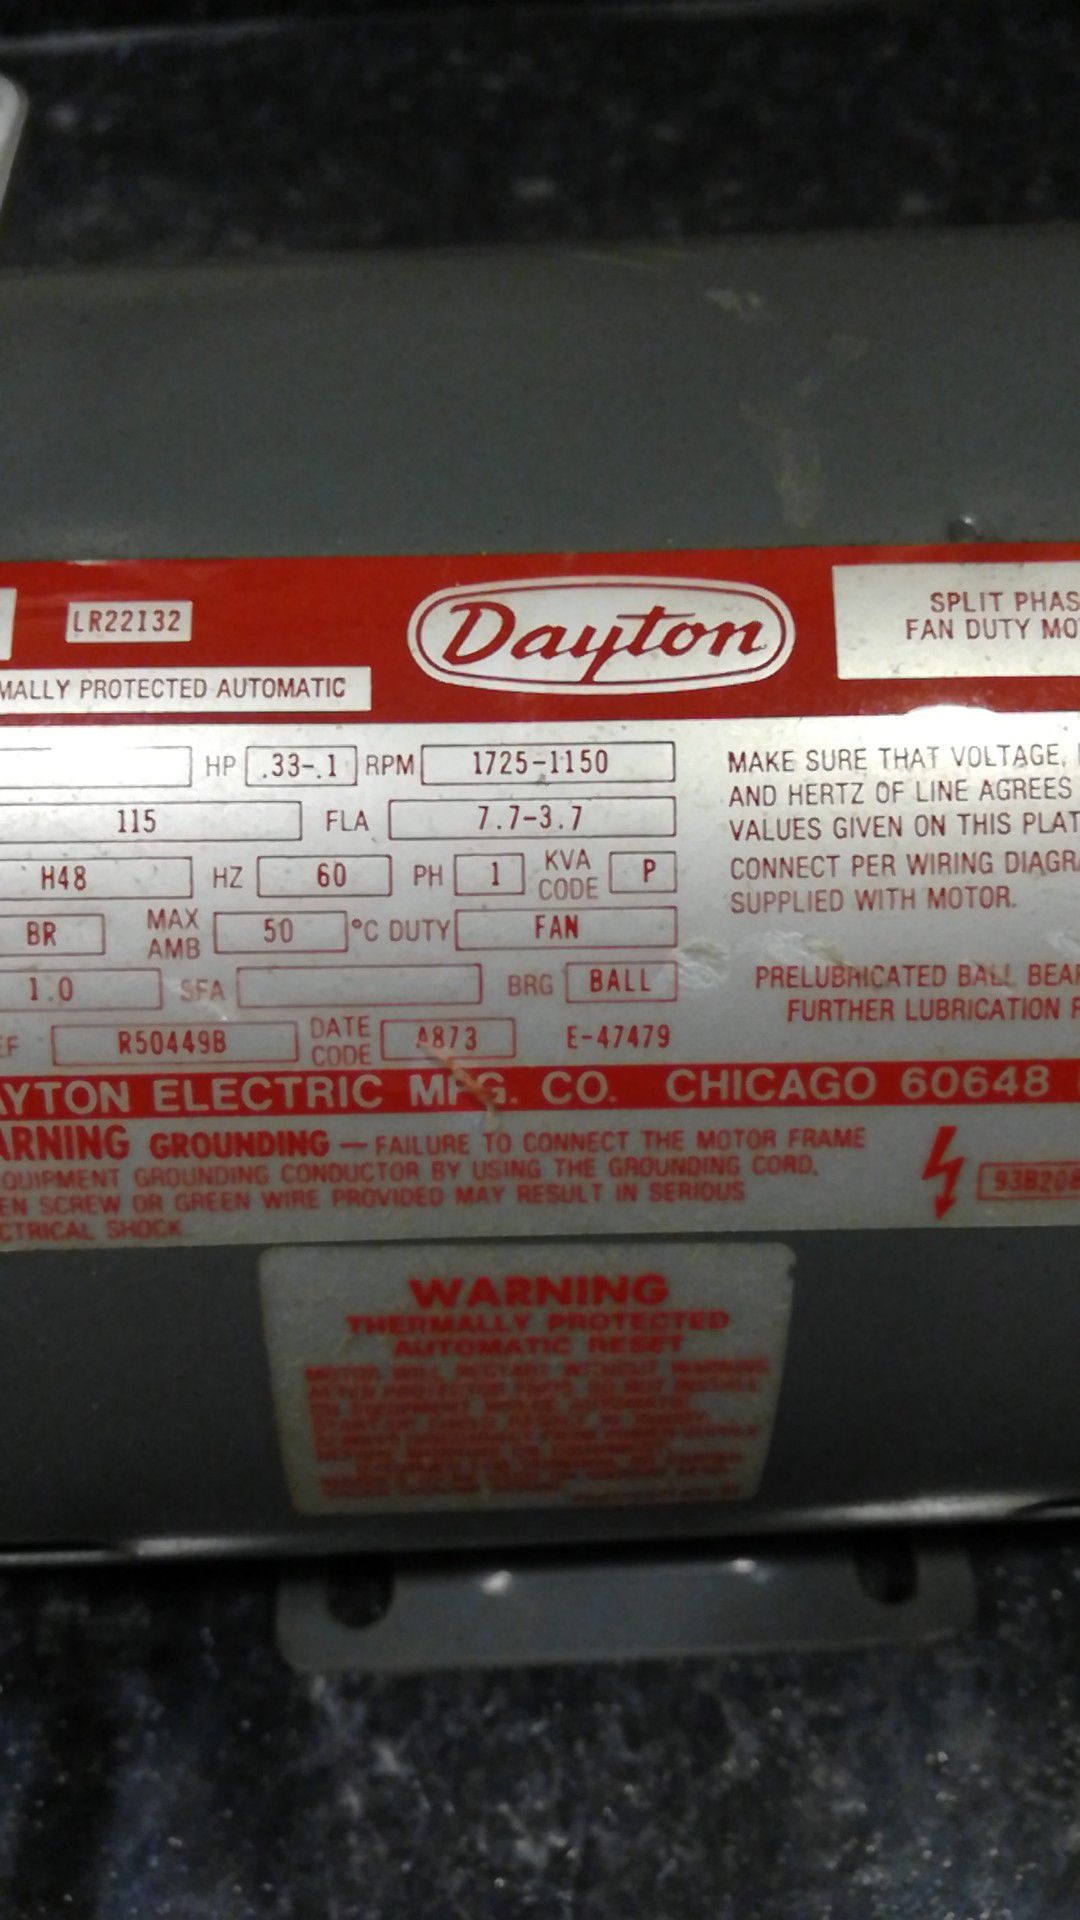 Dayton lr22132 electric motor.